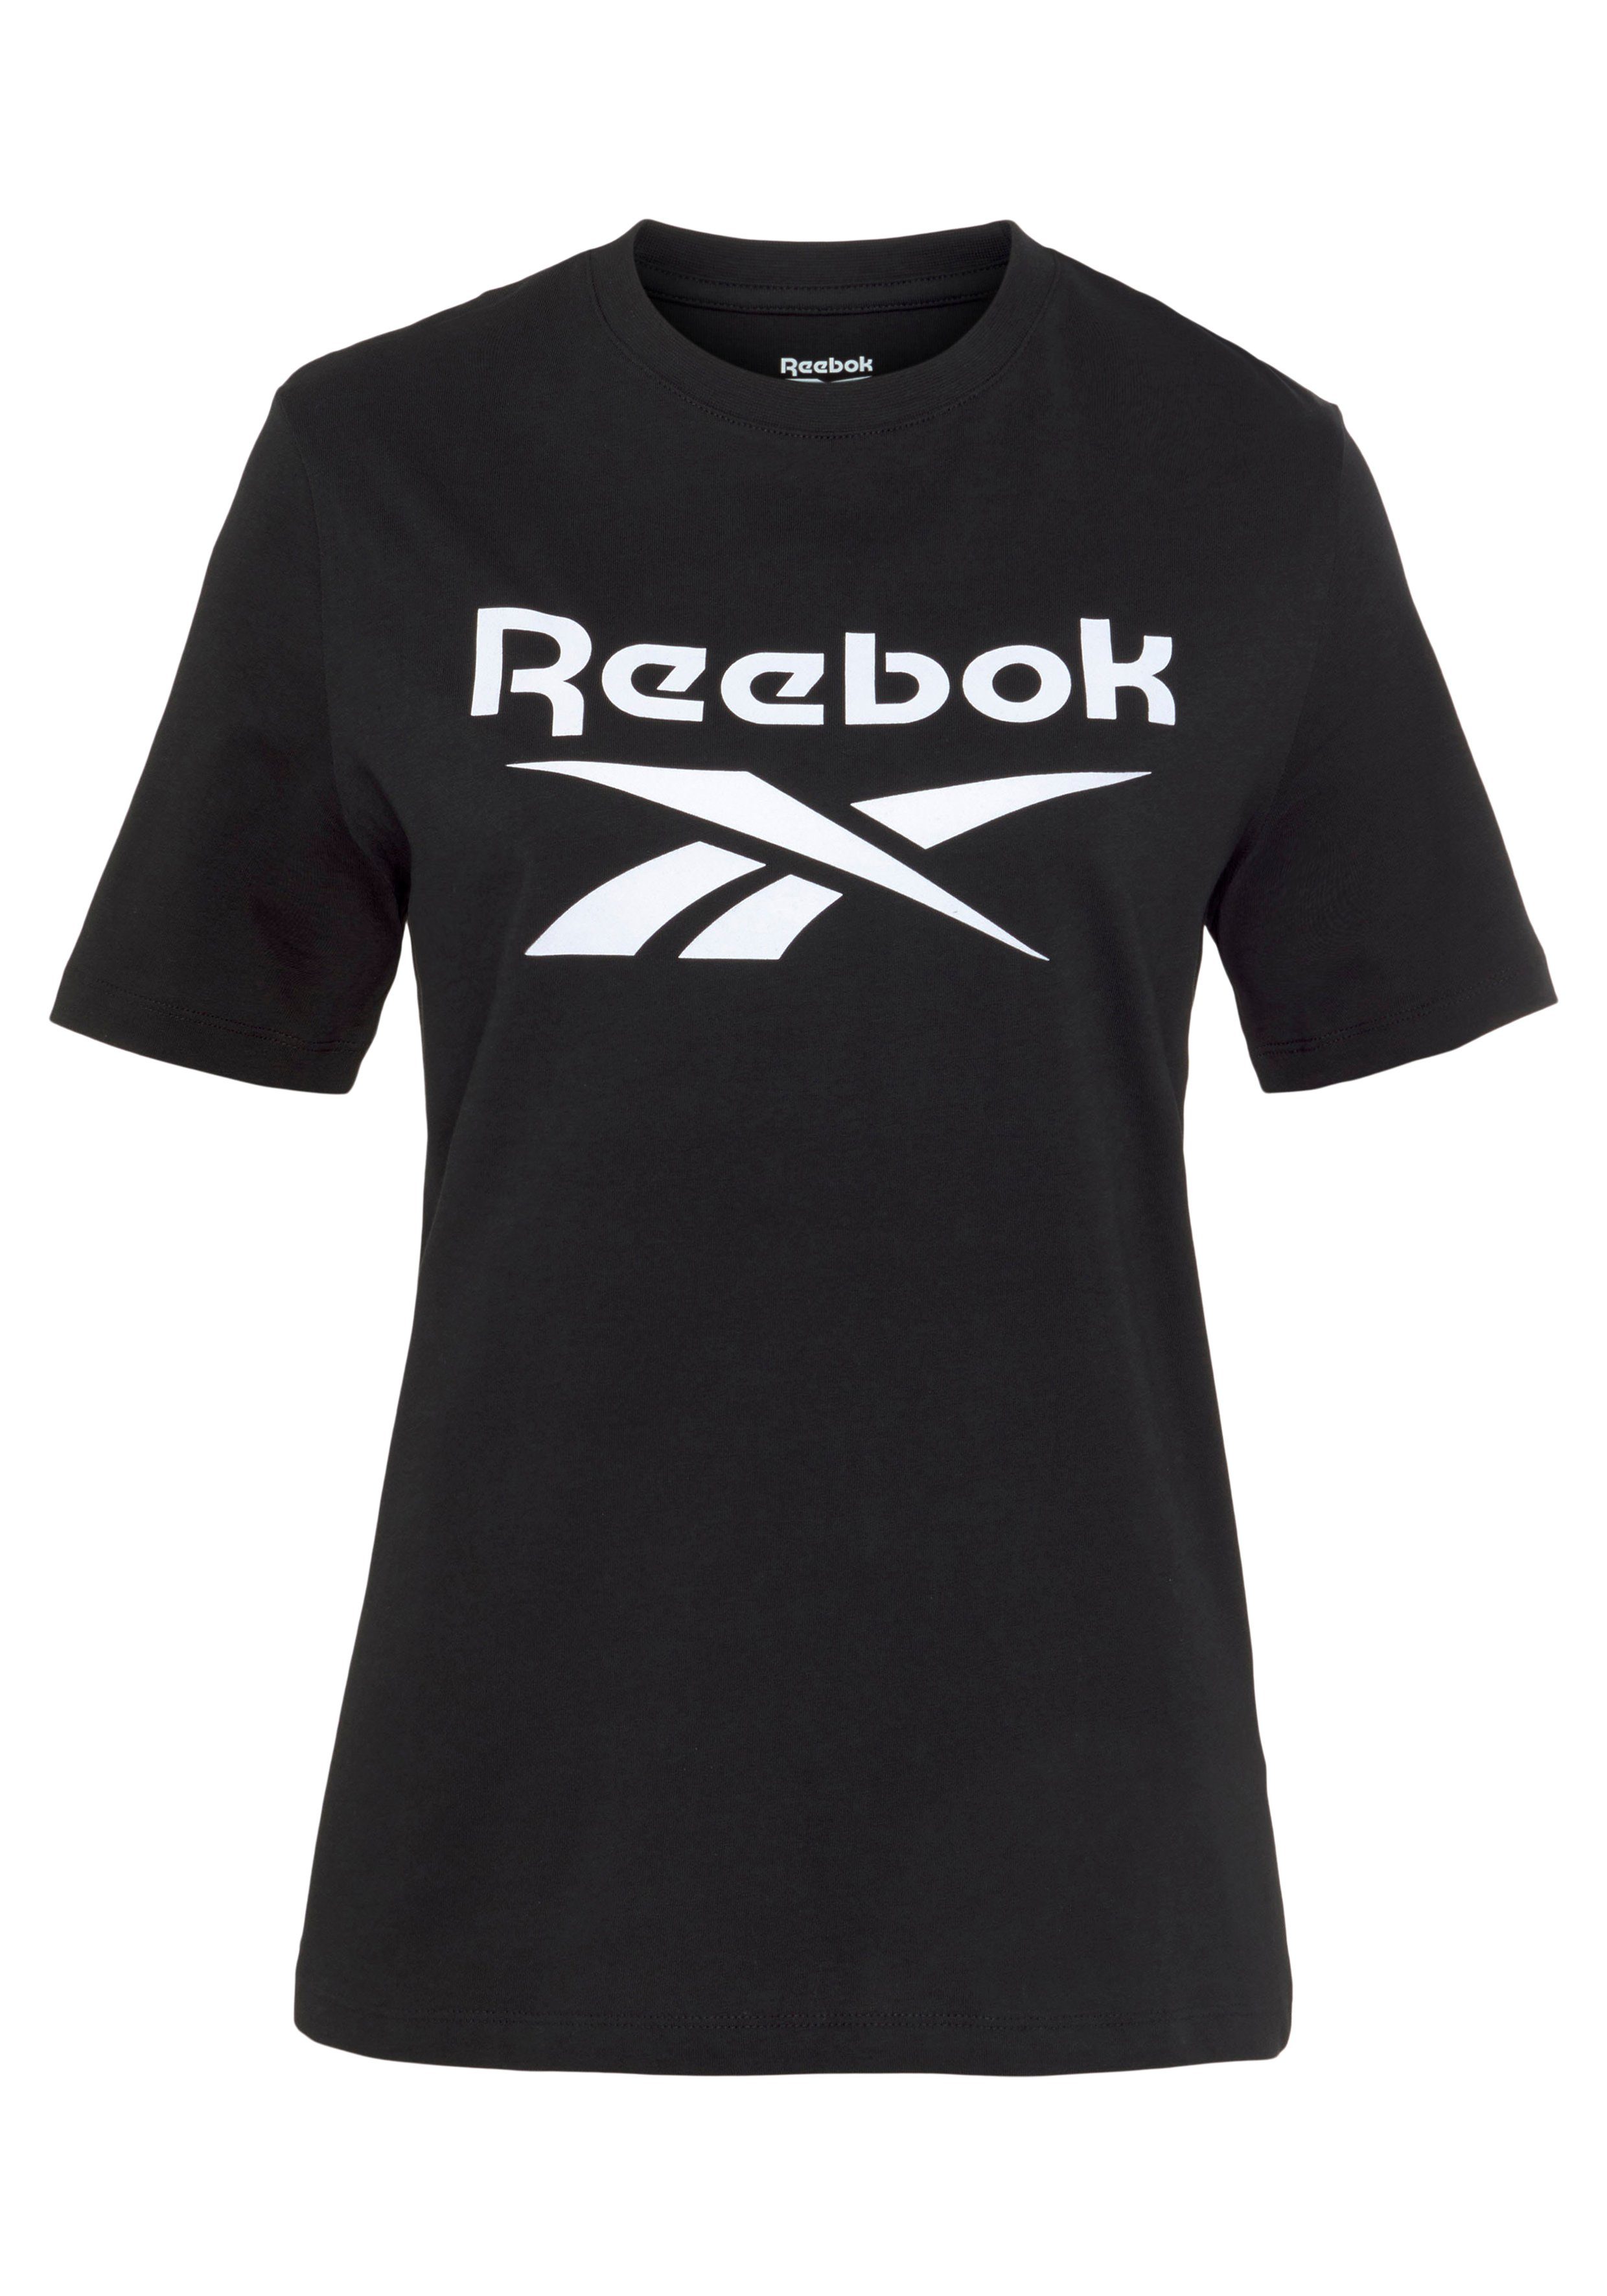 Super günstiger Direktshop Reebok T-Shirt Tee black BL RI